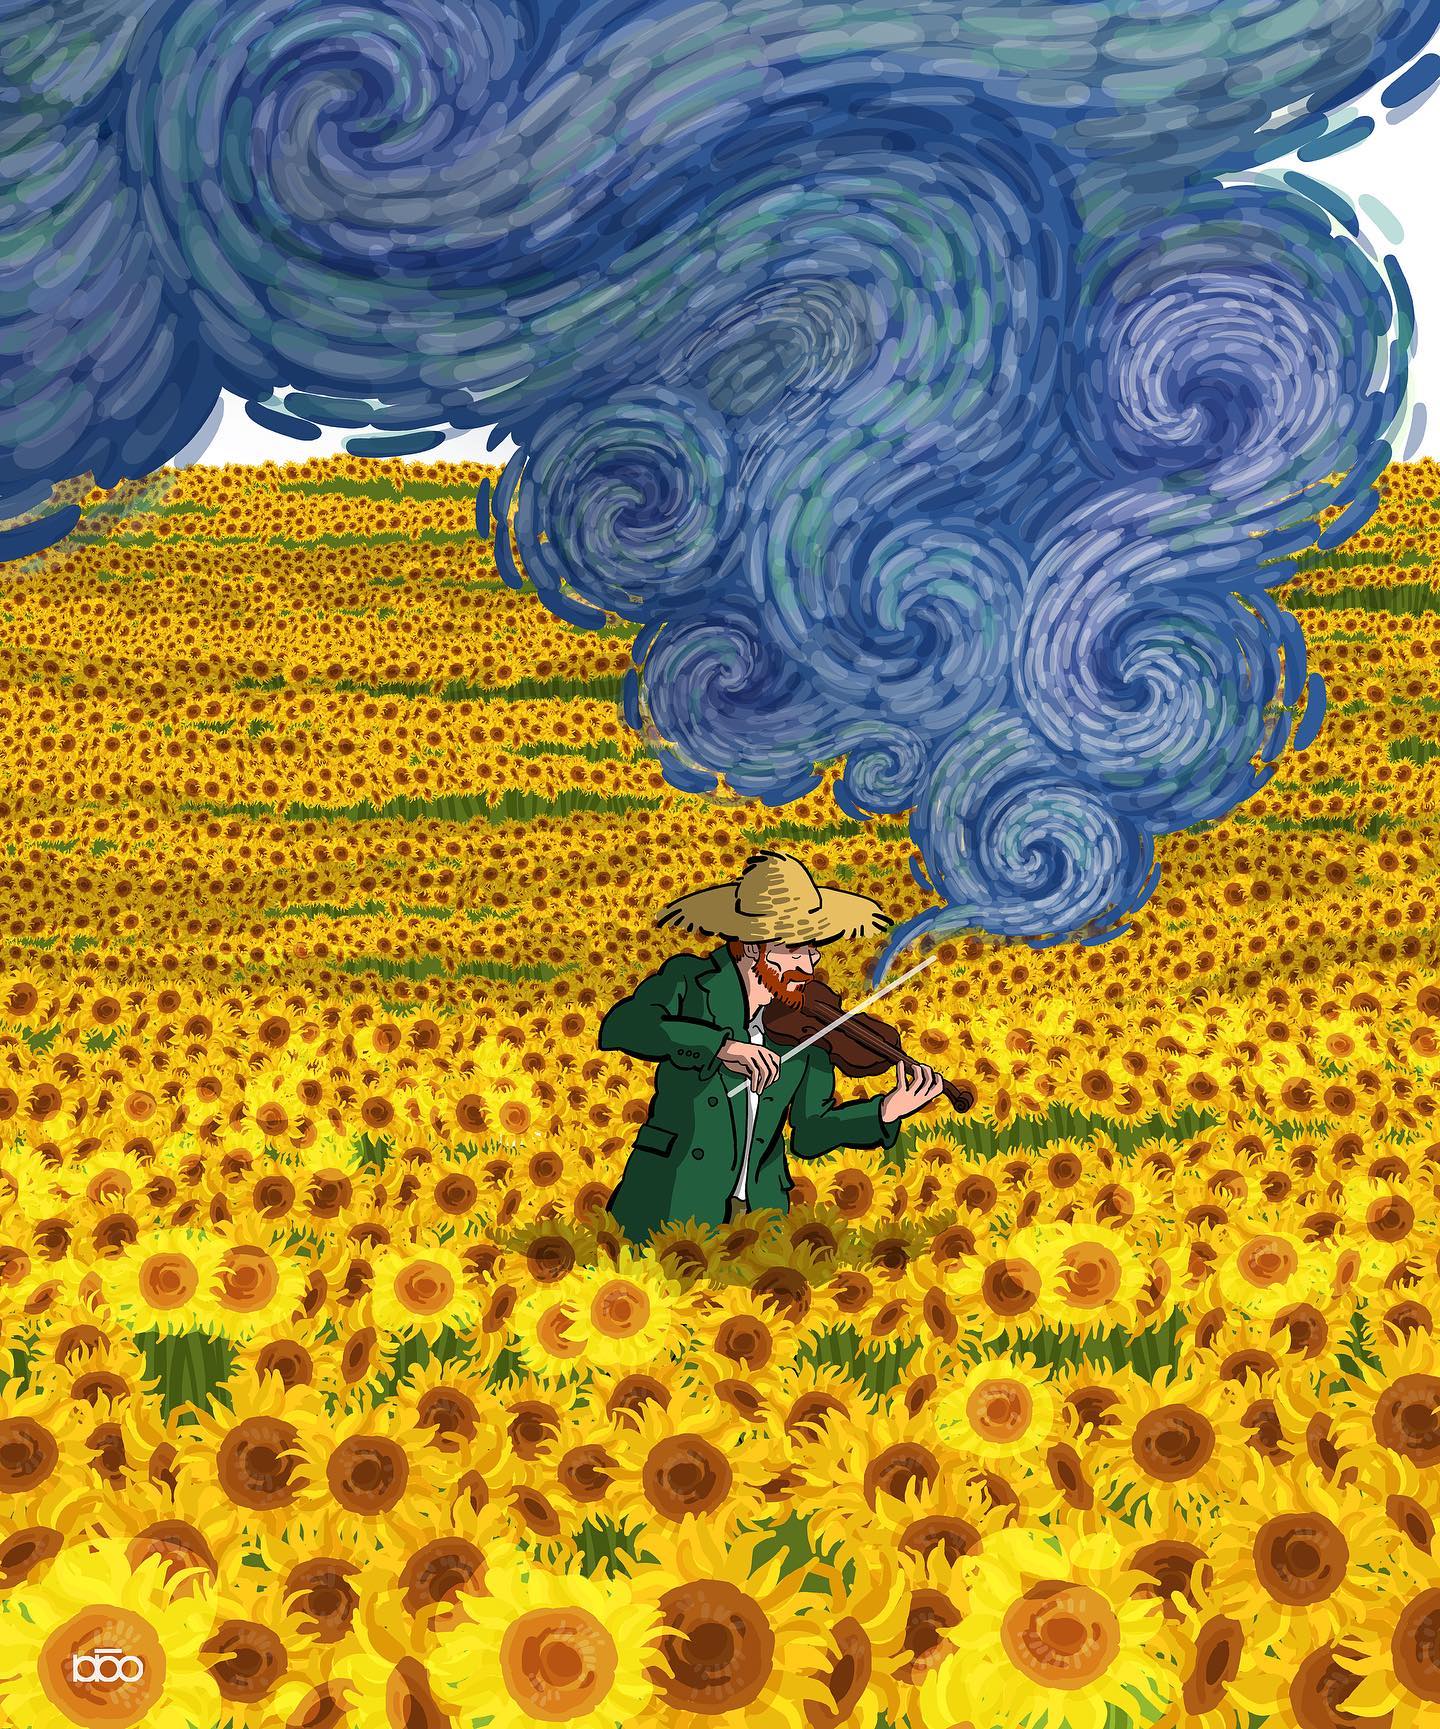 Đời đặc sắc của Van Gogh, thử tưởng tượng họa sĩ đại tài sống trong một thế giới hoạt hình? - Ảnh 8.